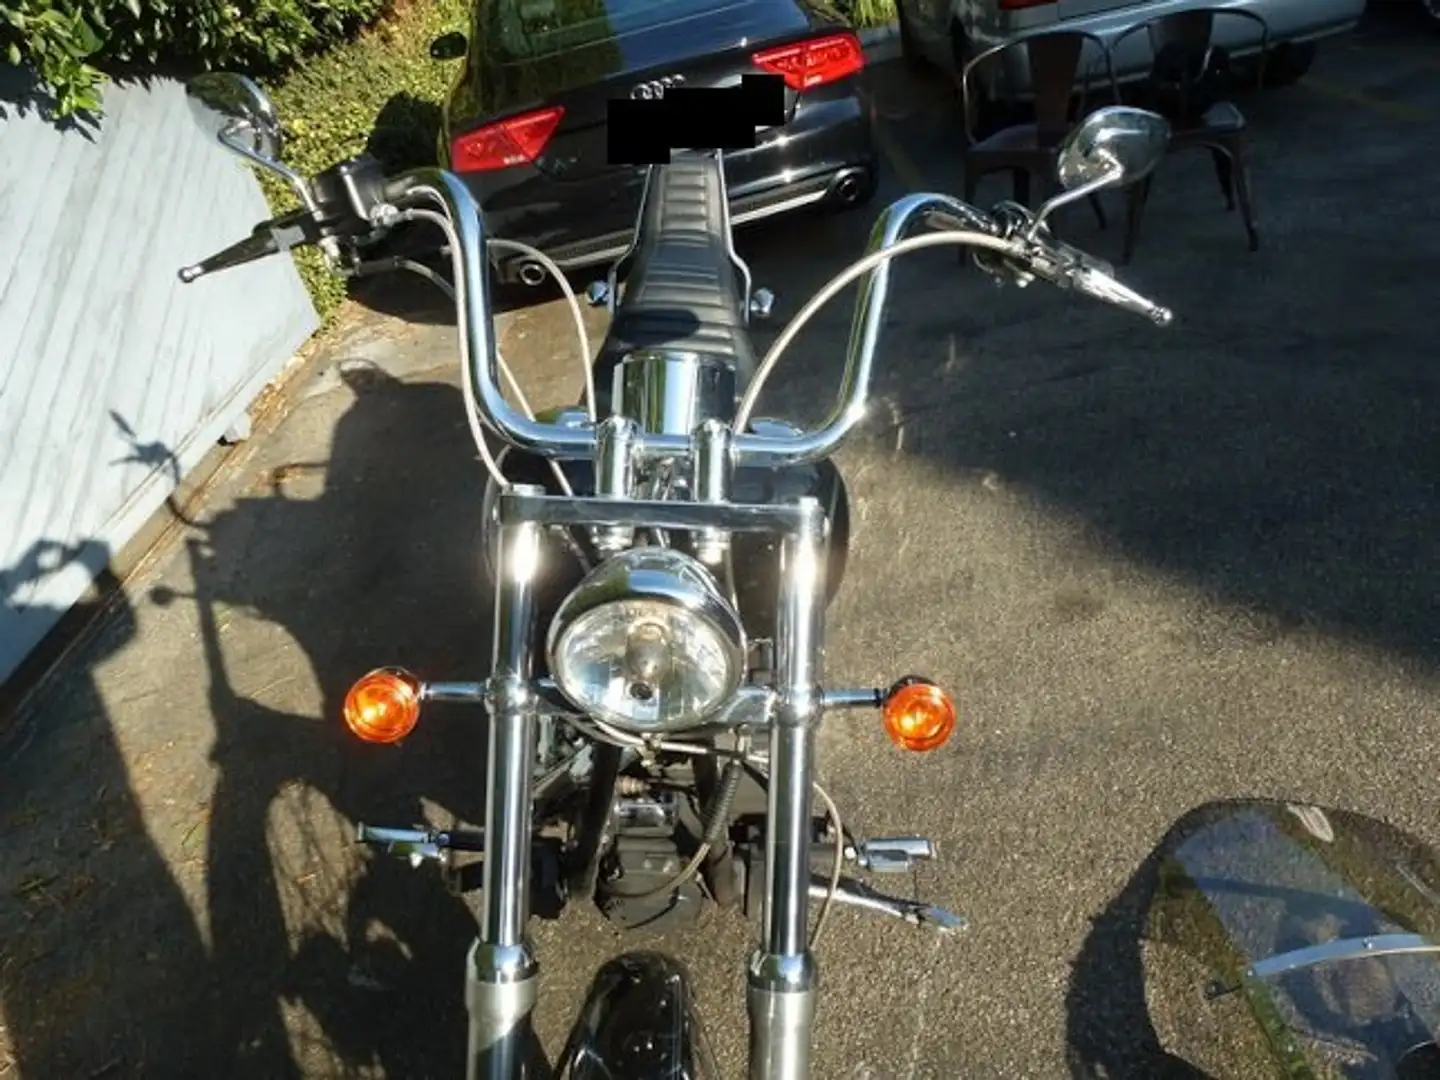 Harley-Davidson Softail Czarny - 2